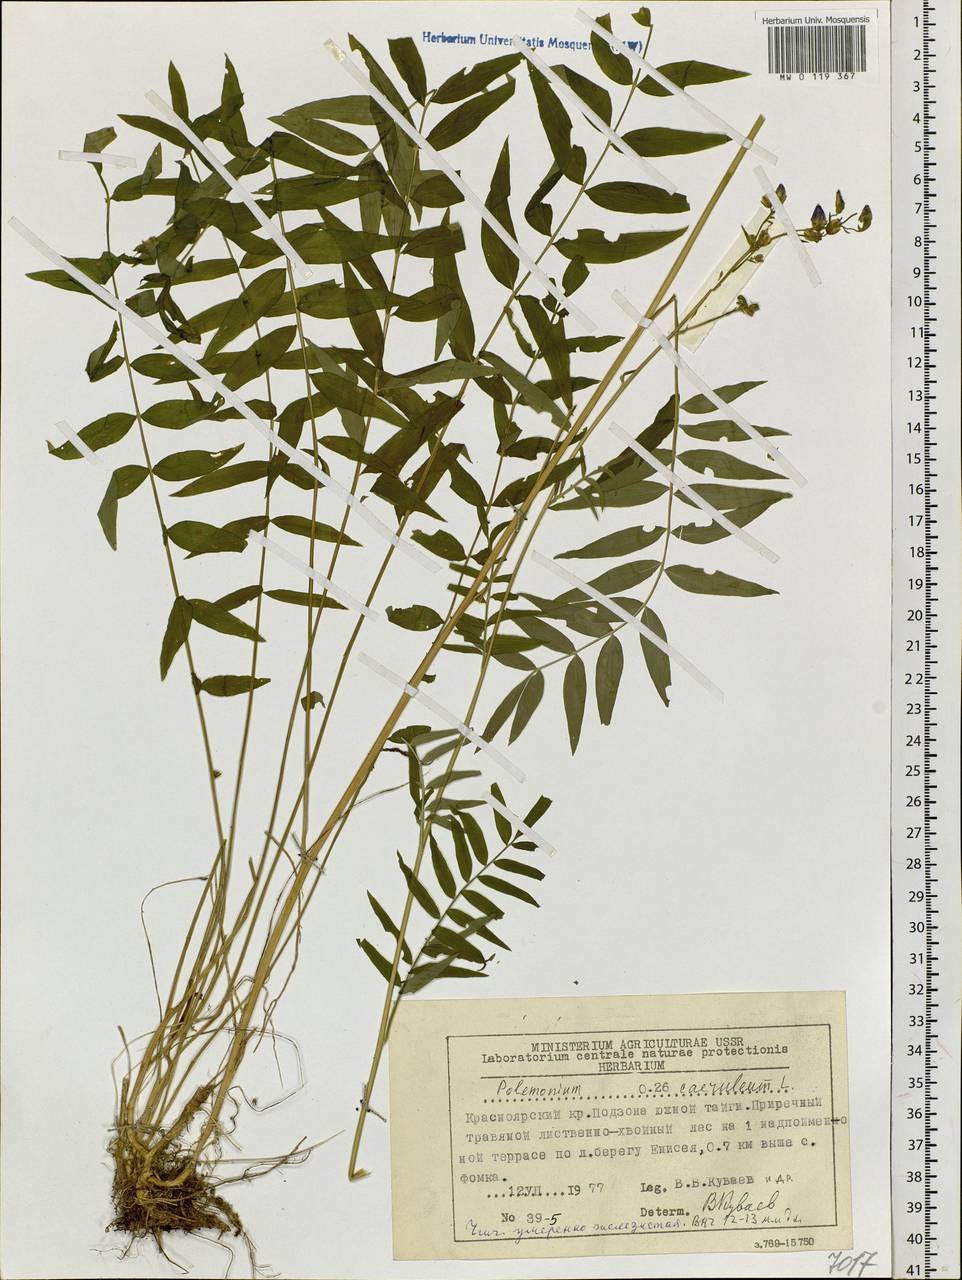 Polemonium caeruleum L., Siberia, Central Siberia (S3) (Russia)